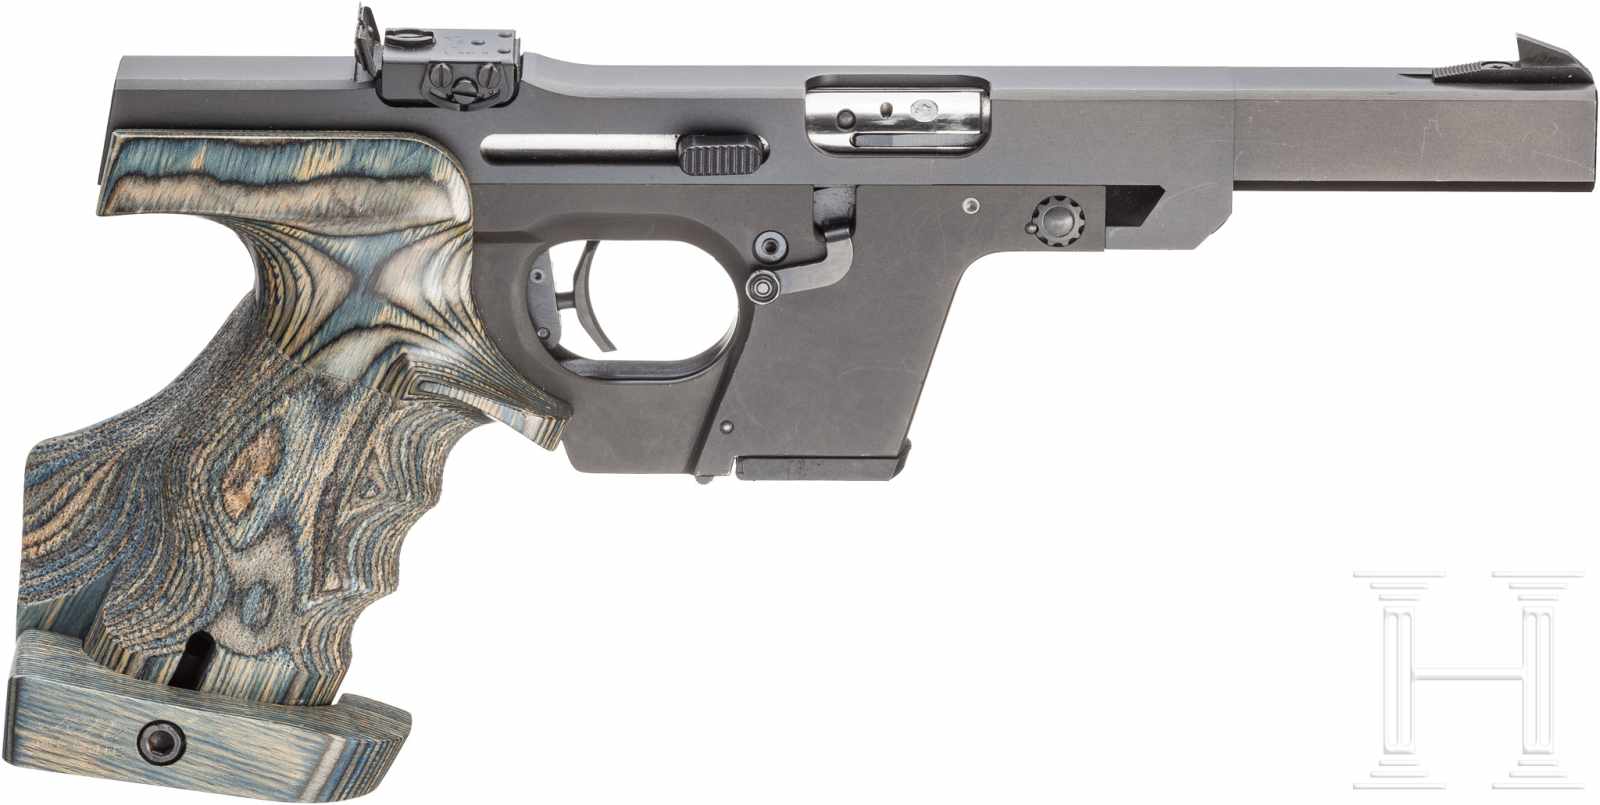 Walther GSP, im SchützenkofferKal. .22 l.r., Nr. 234593, Blanker Lauf, Länge 115 mm. Fünfschüssig. - Image 2 of 2